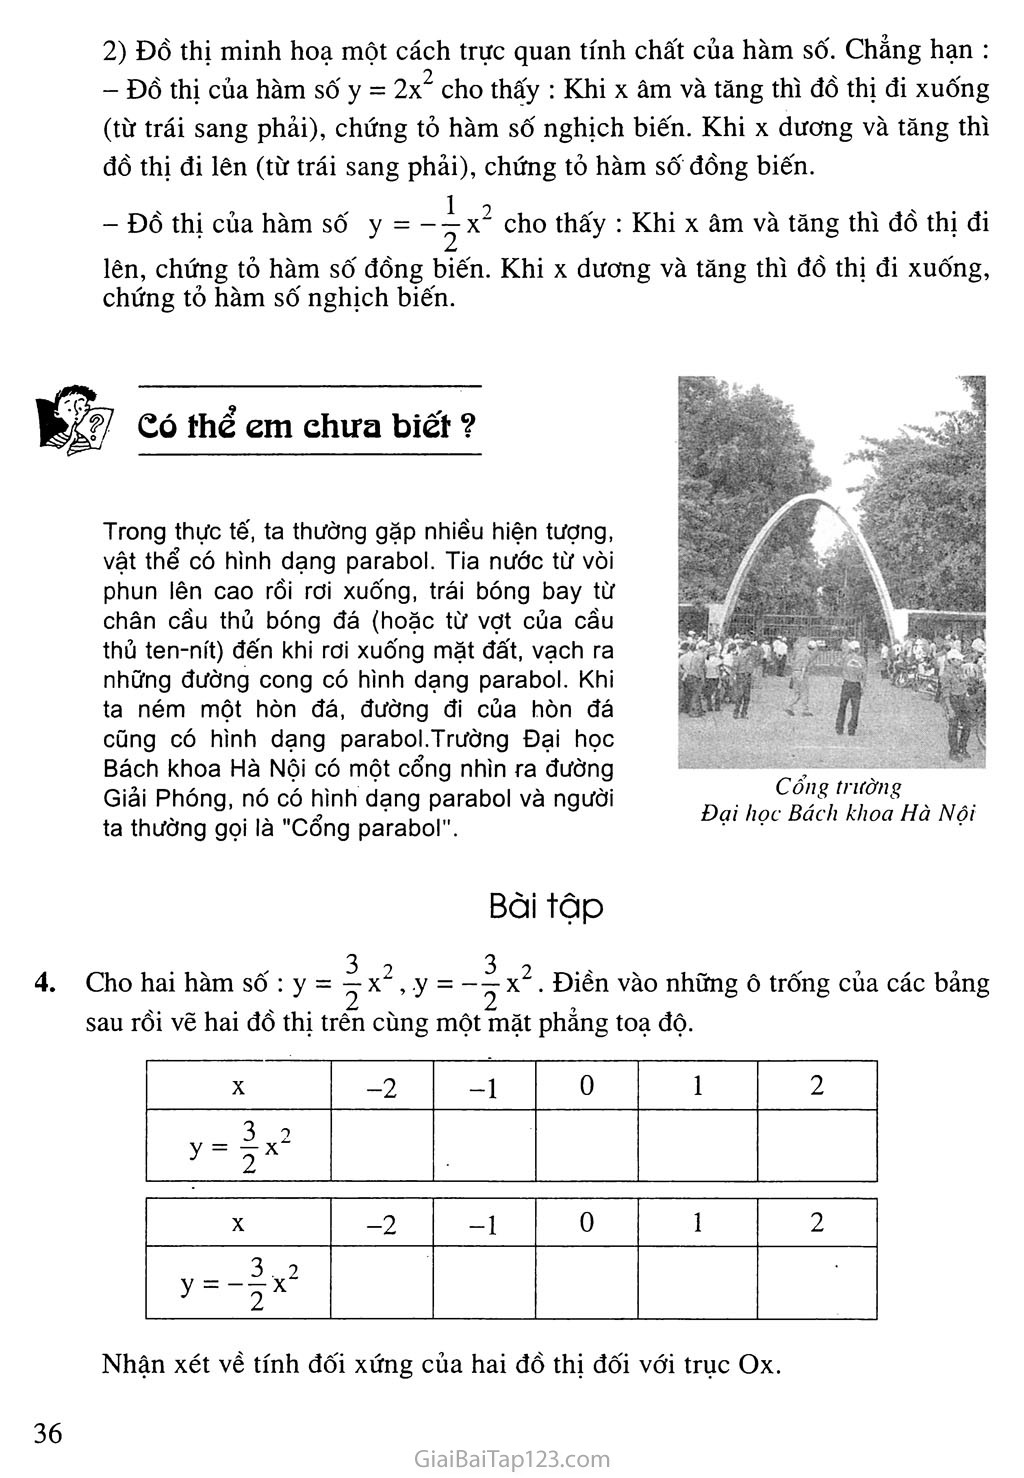 Bài 2. Đồ thị hàm số y = ax2 (a khác 0) trang 4